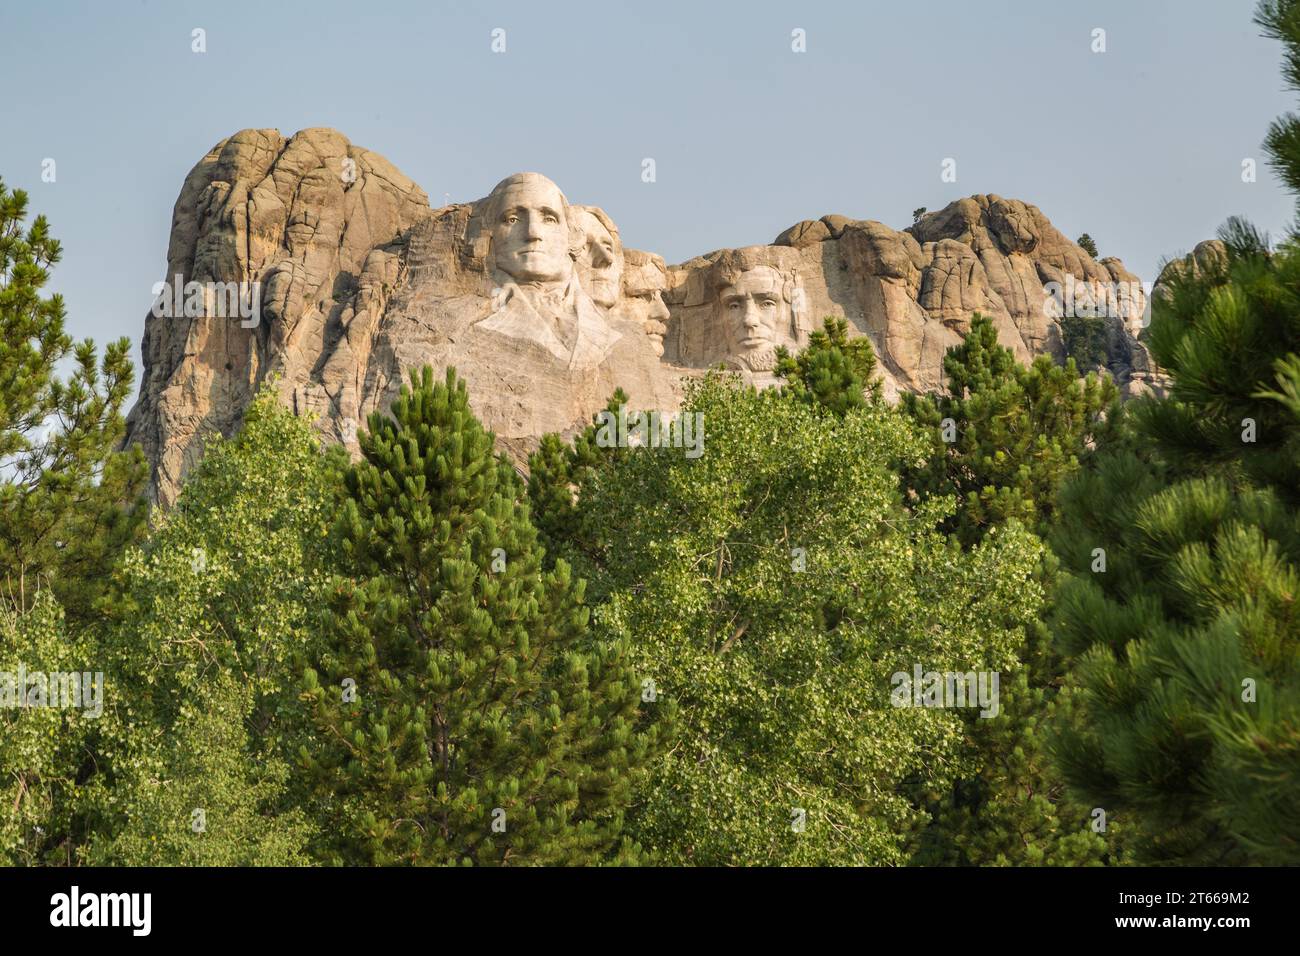 Bustes en granit sculptés de George Washington, Thomas Jefferson, Theodore Teddy Roosevelt et Abraham Lincoln au Mount Rushmore National Monument Banque D'Images